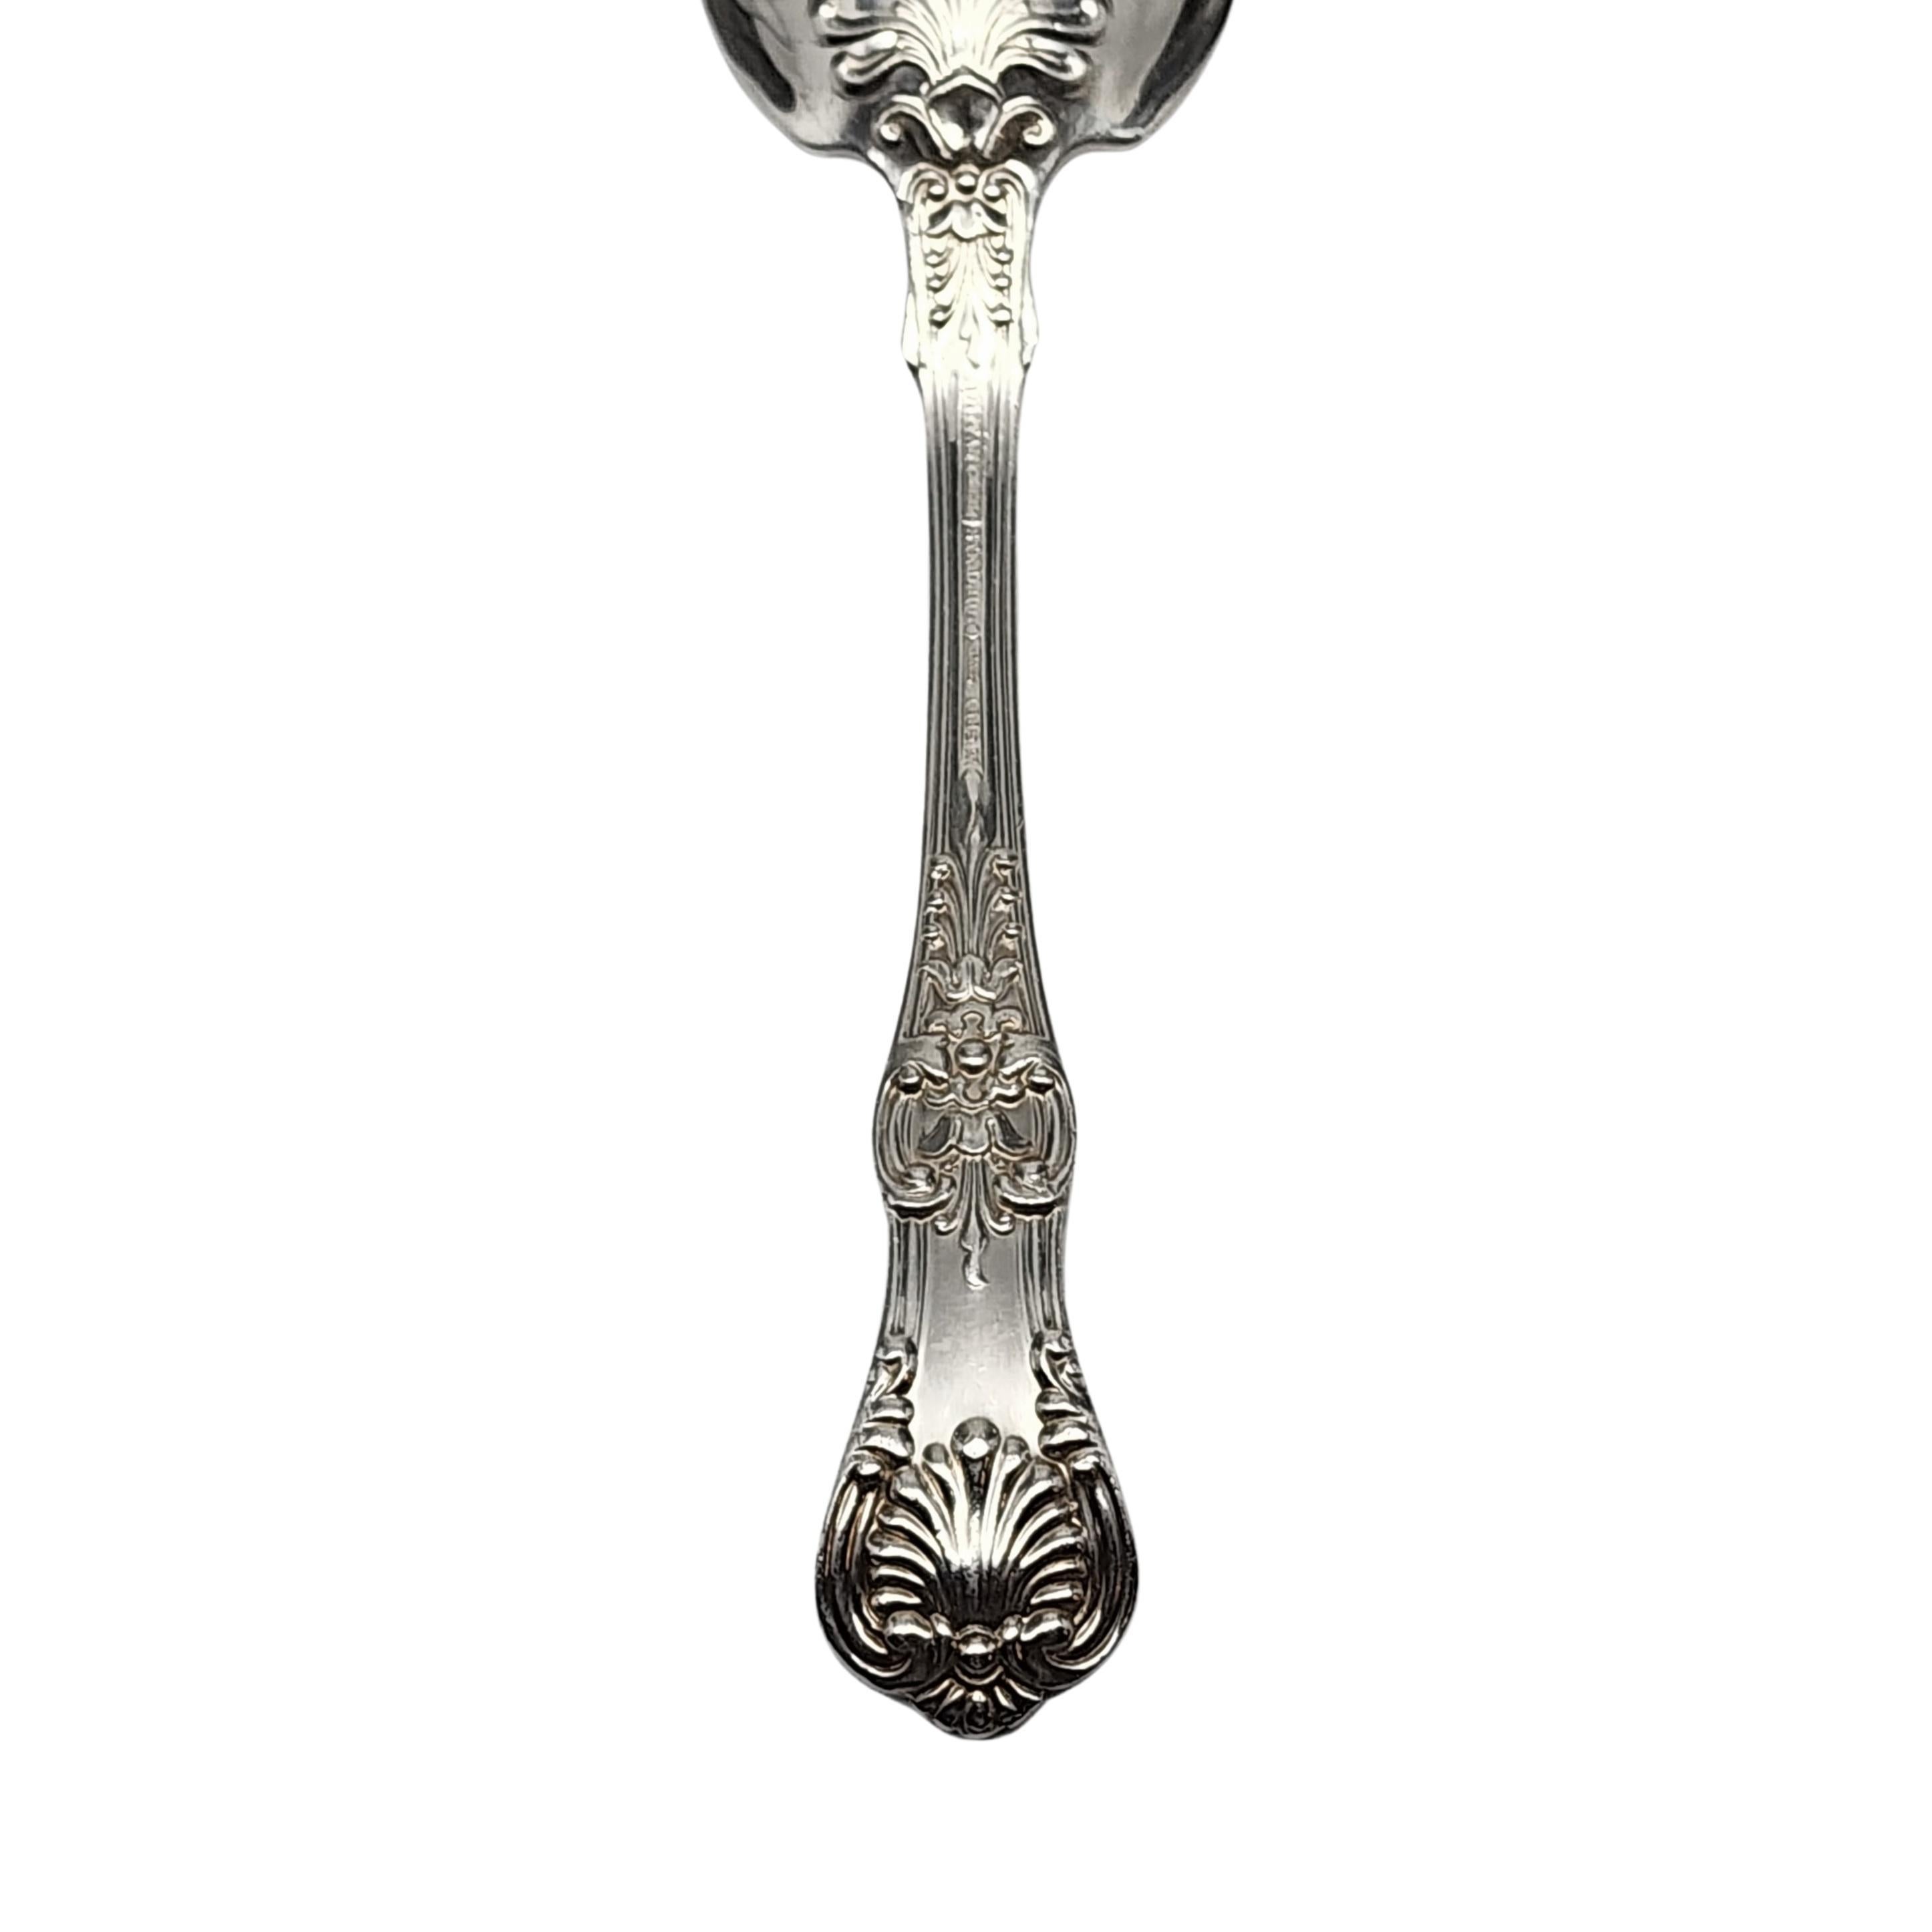 Tiffany & Co English King Sterling Silver Sugar Spoon 5 5/8